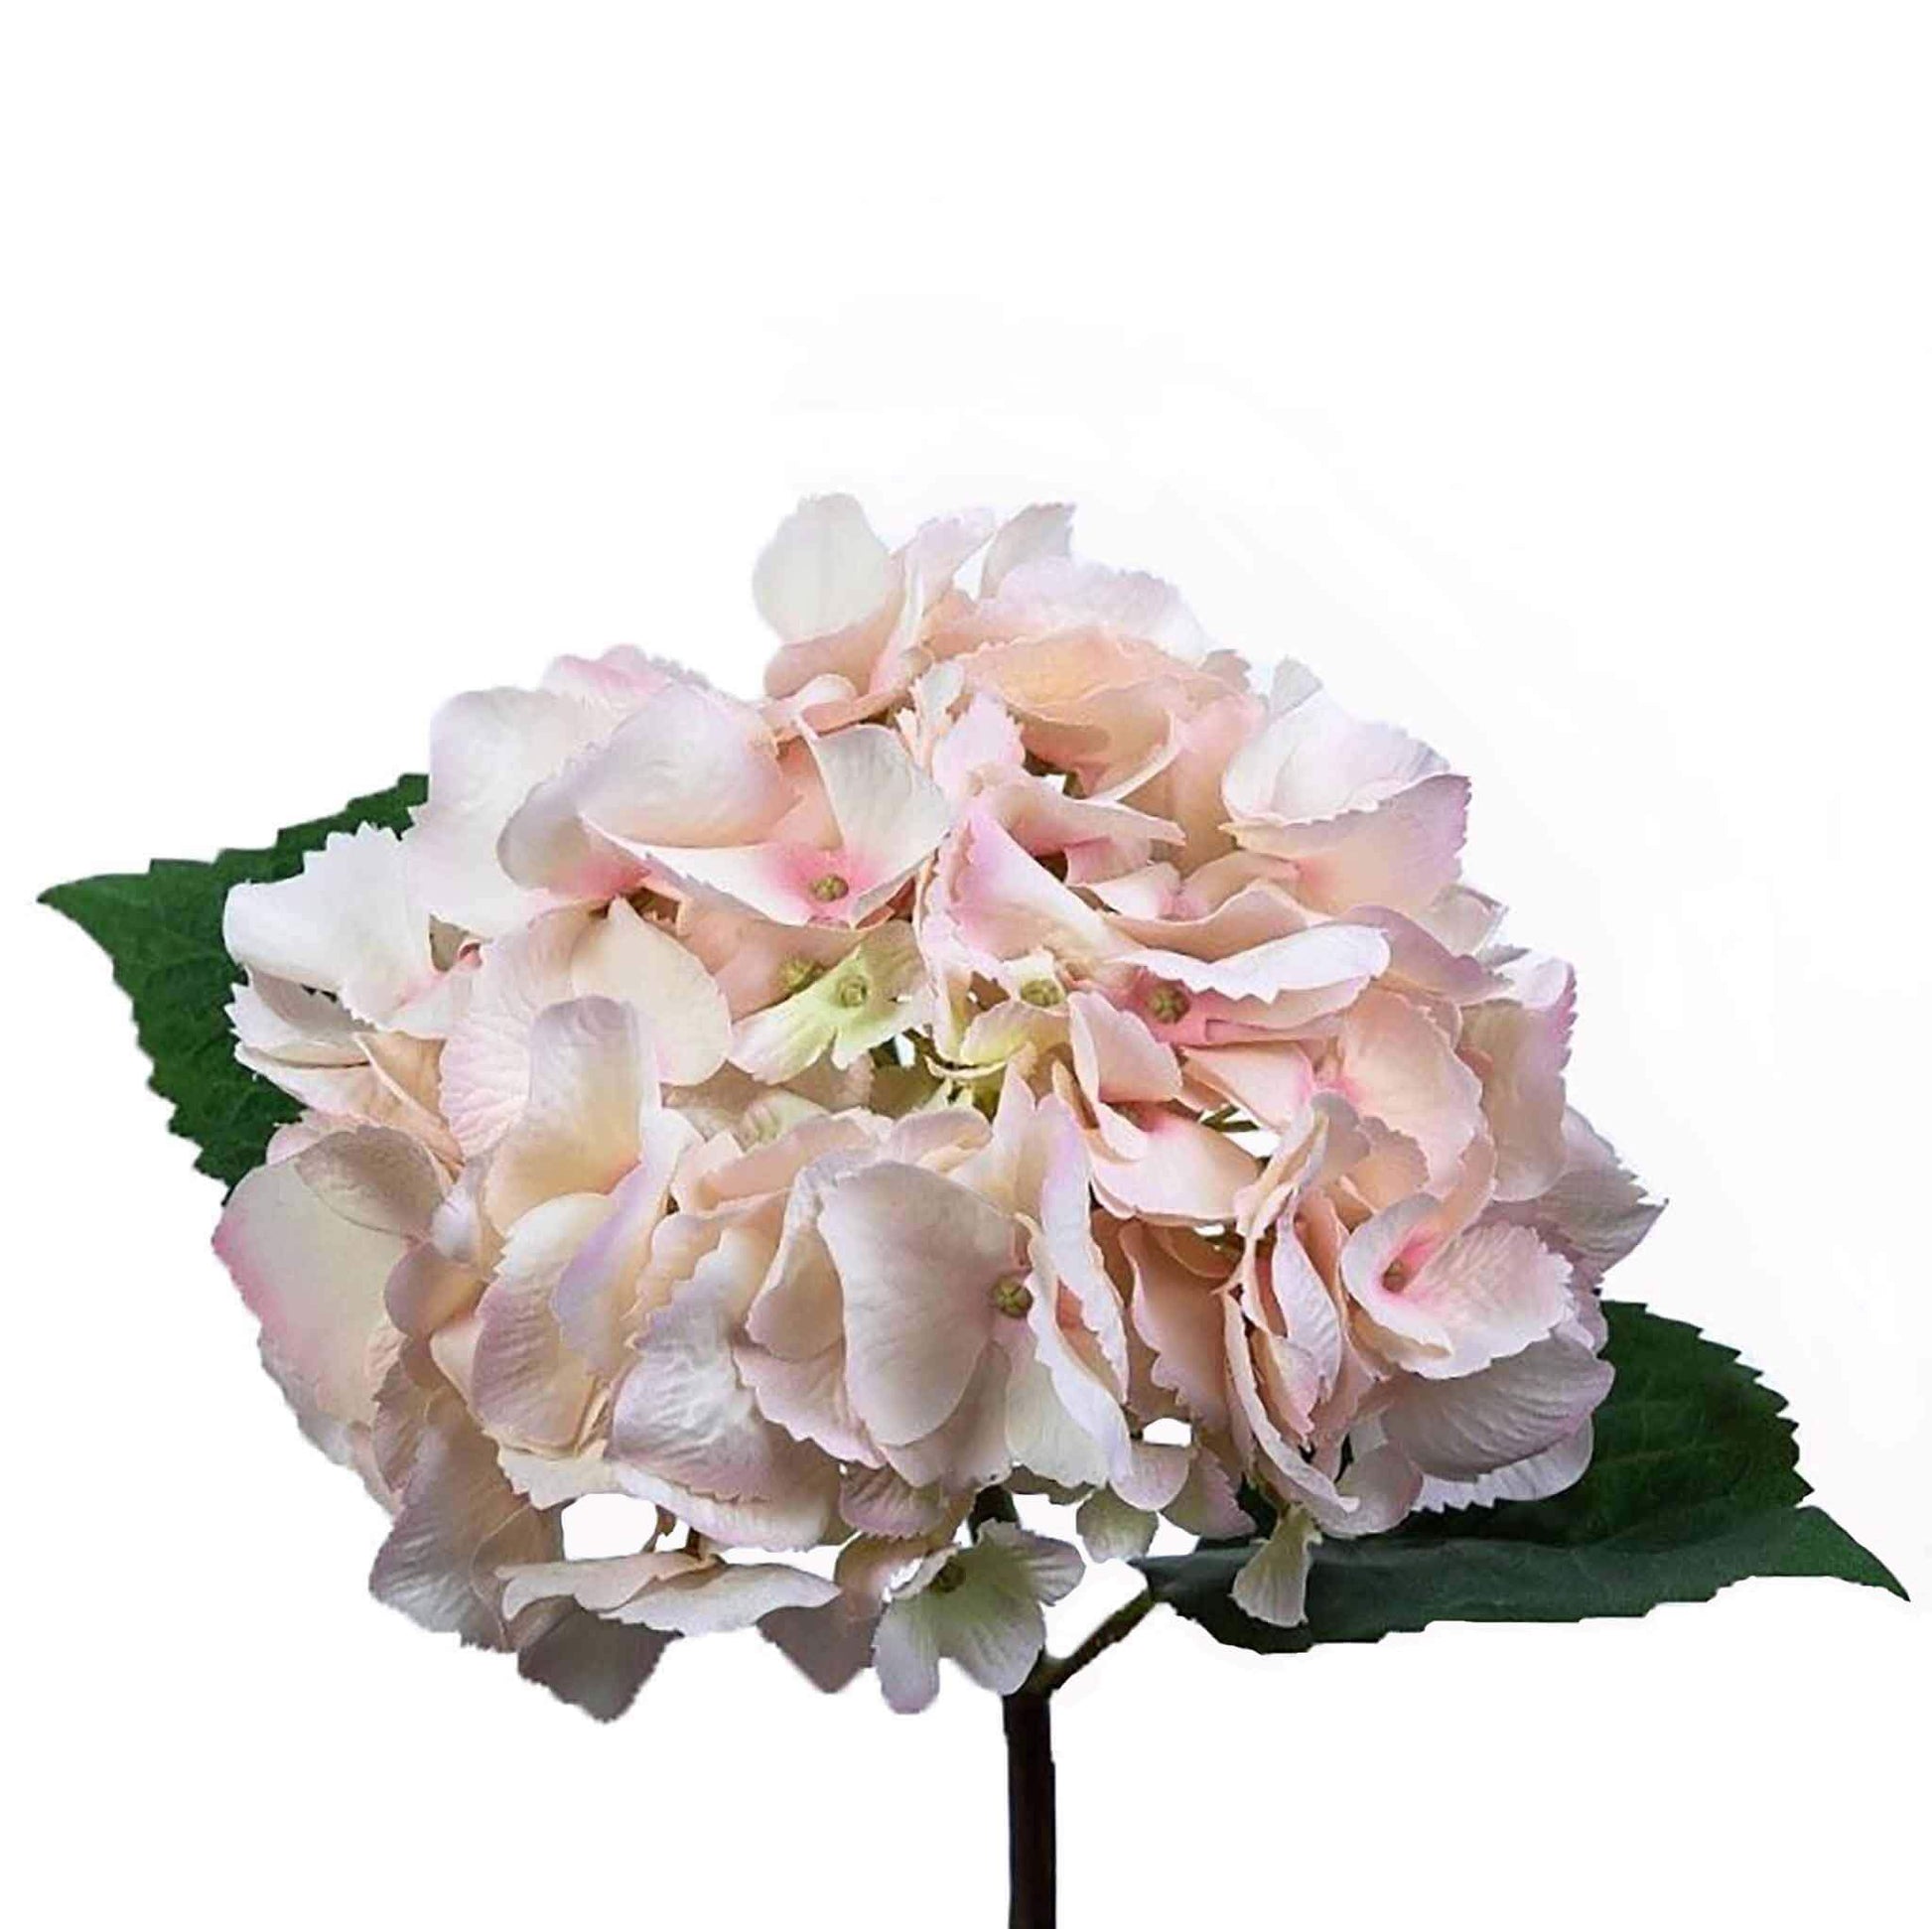 Luxury pale pink faux hydrangea stem